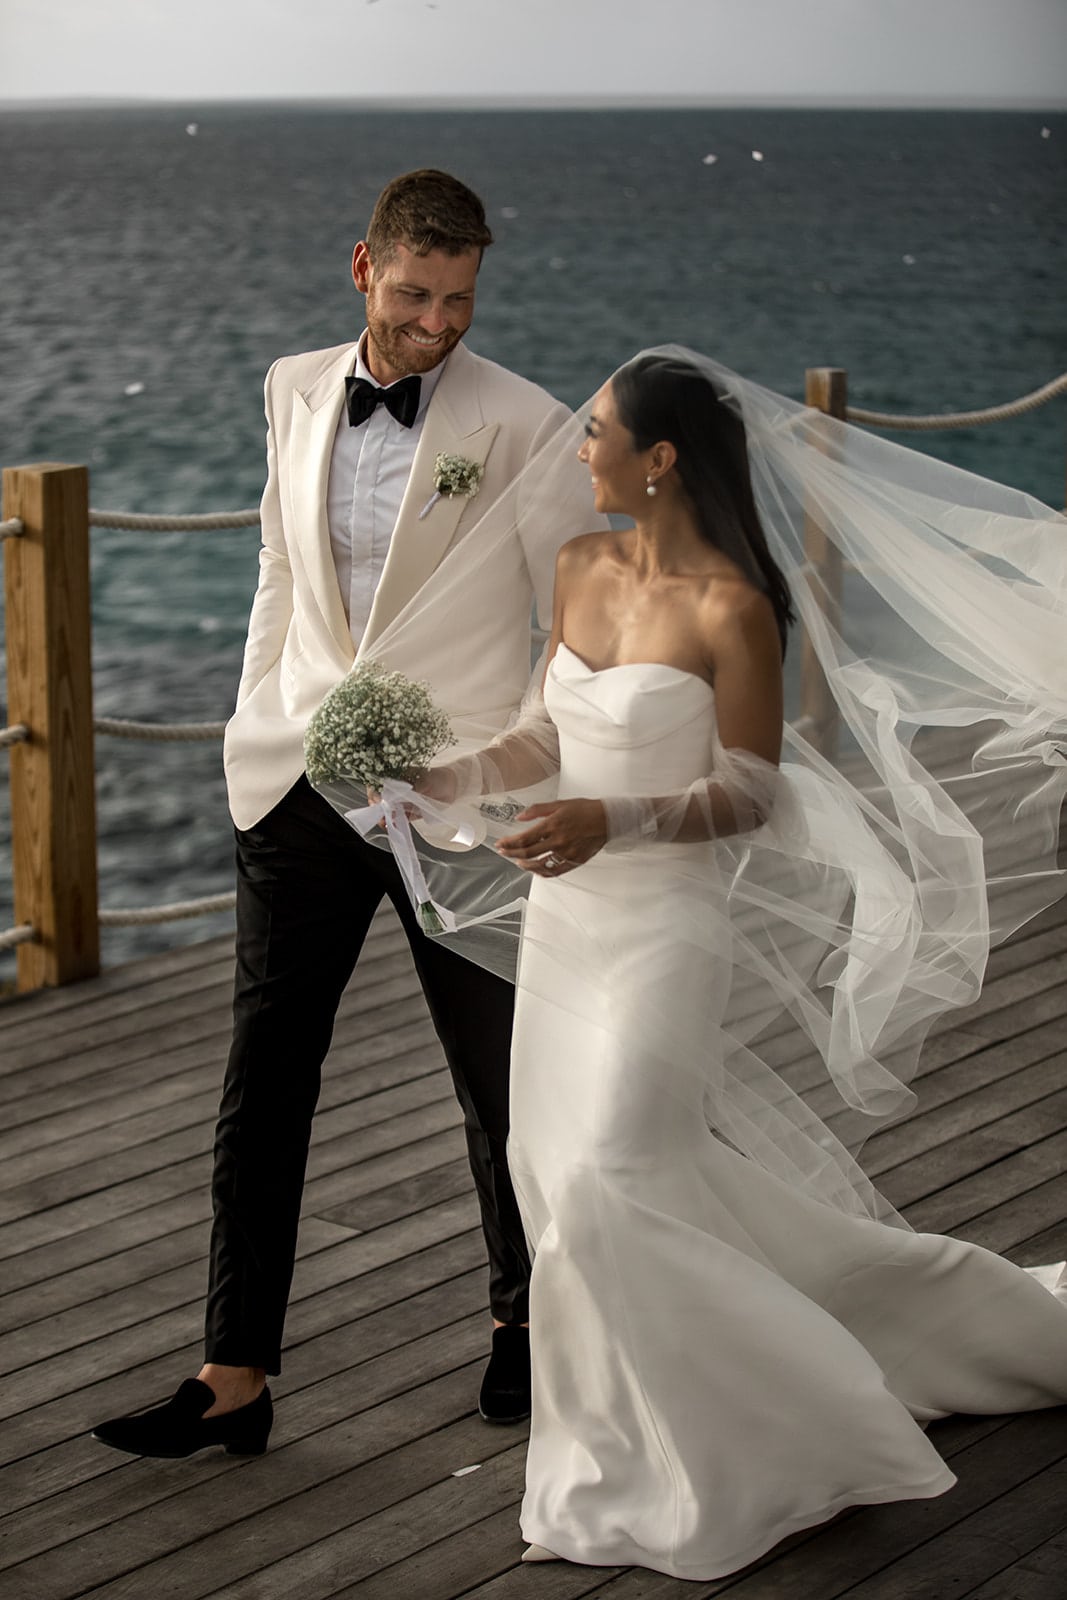 Bride and groom walk on a dock overlooking the ocean in Anguilla